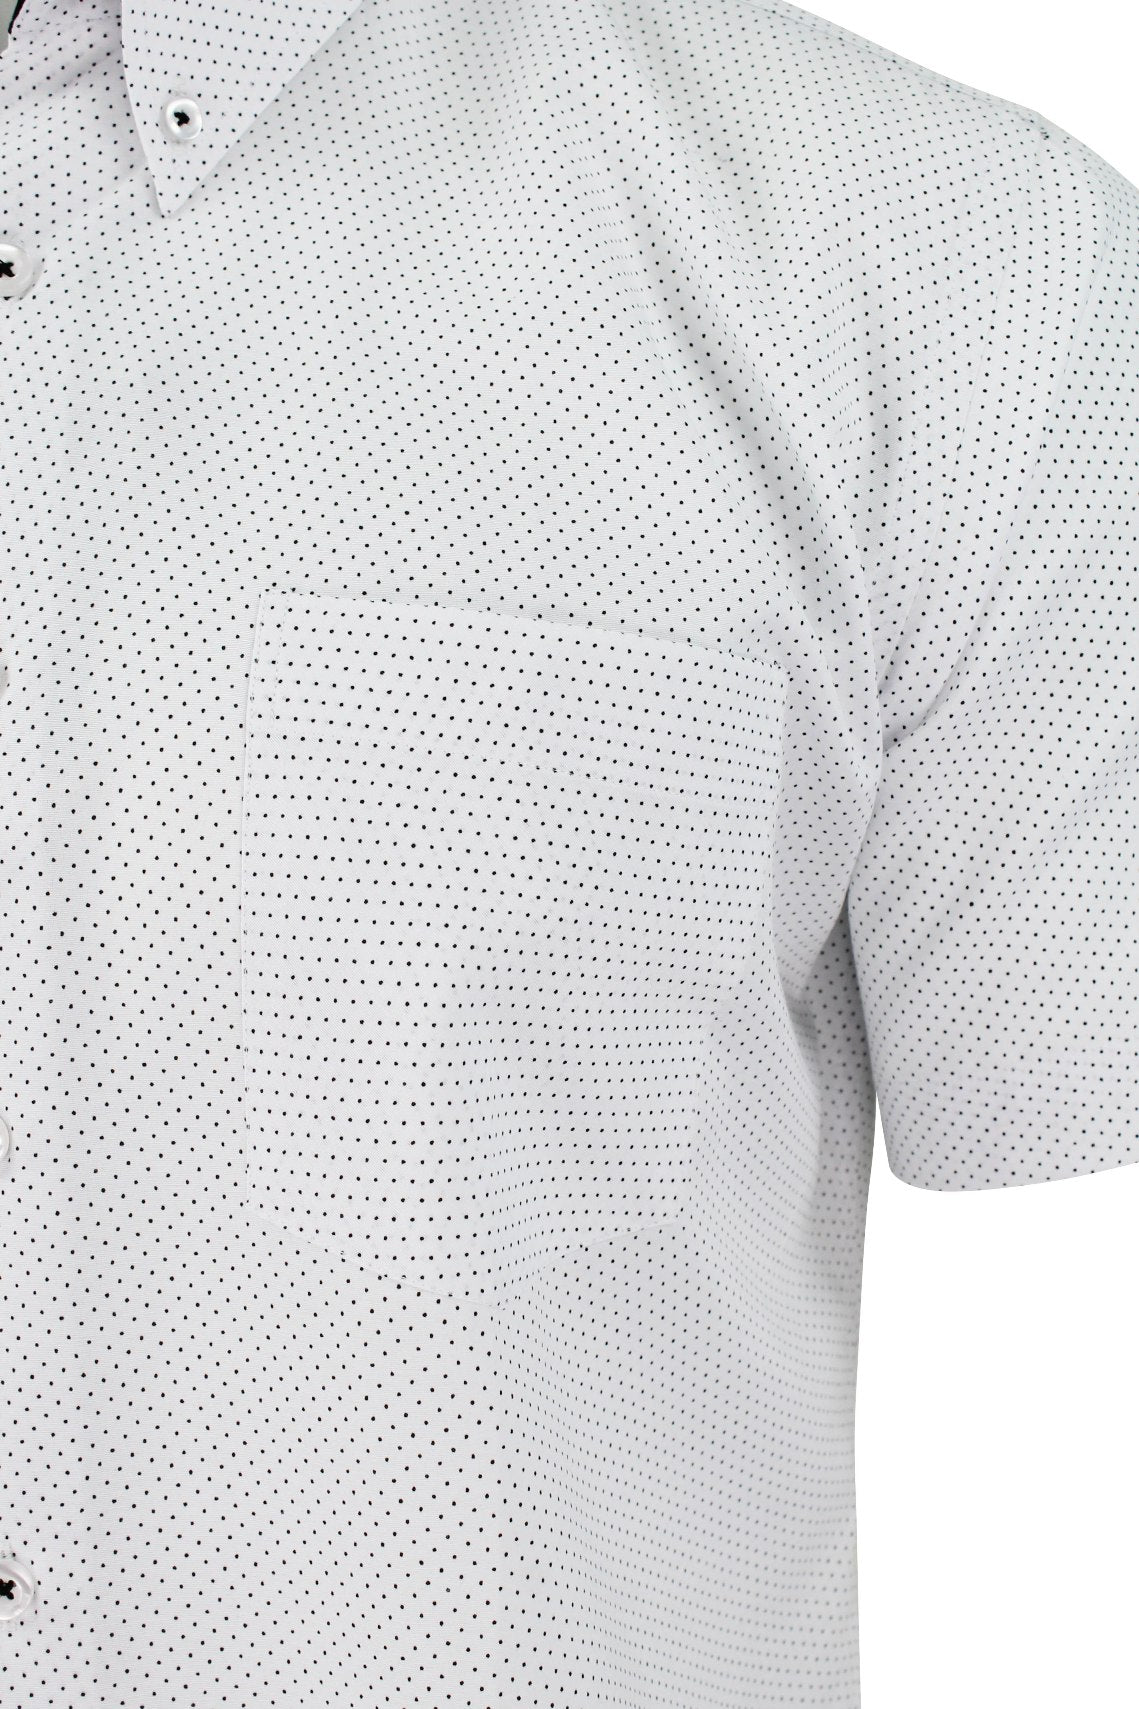 Xact "Mini Polka Dot" Short Sleeved Shirt, 02, K_1510120, White